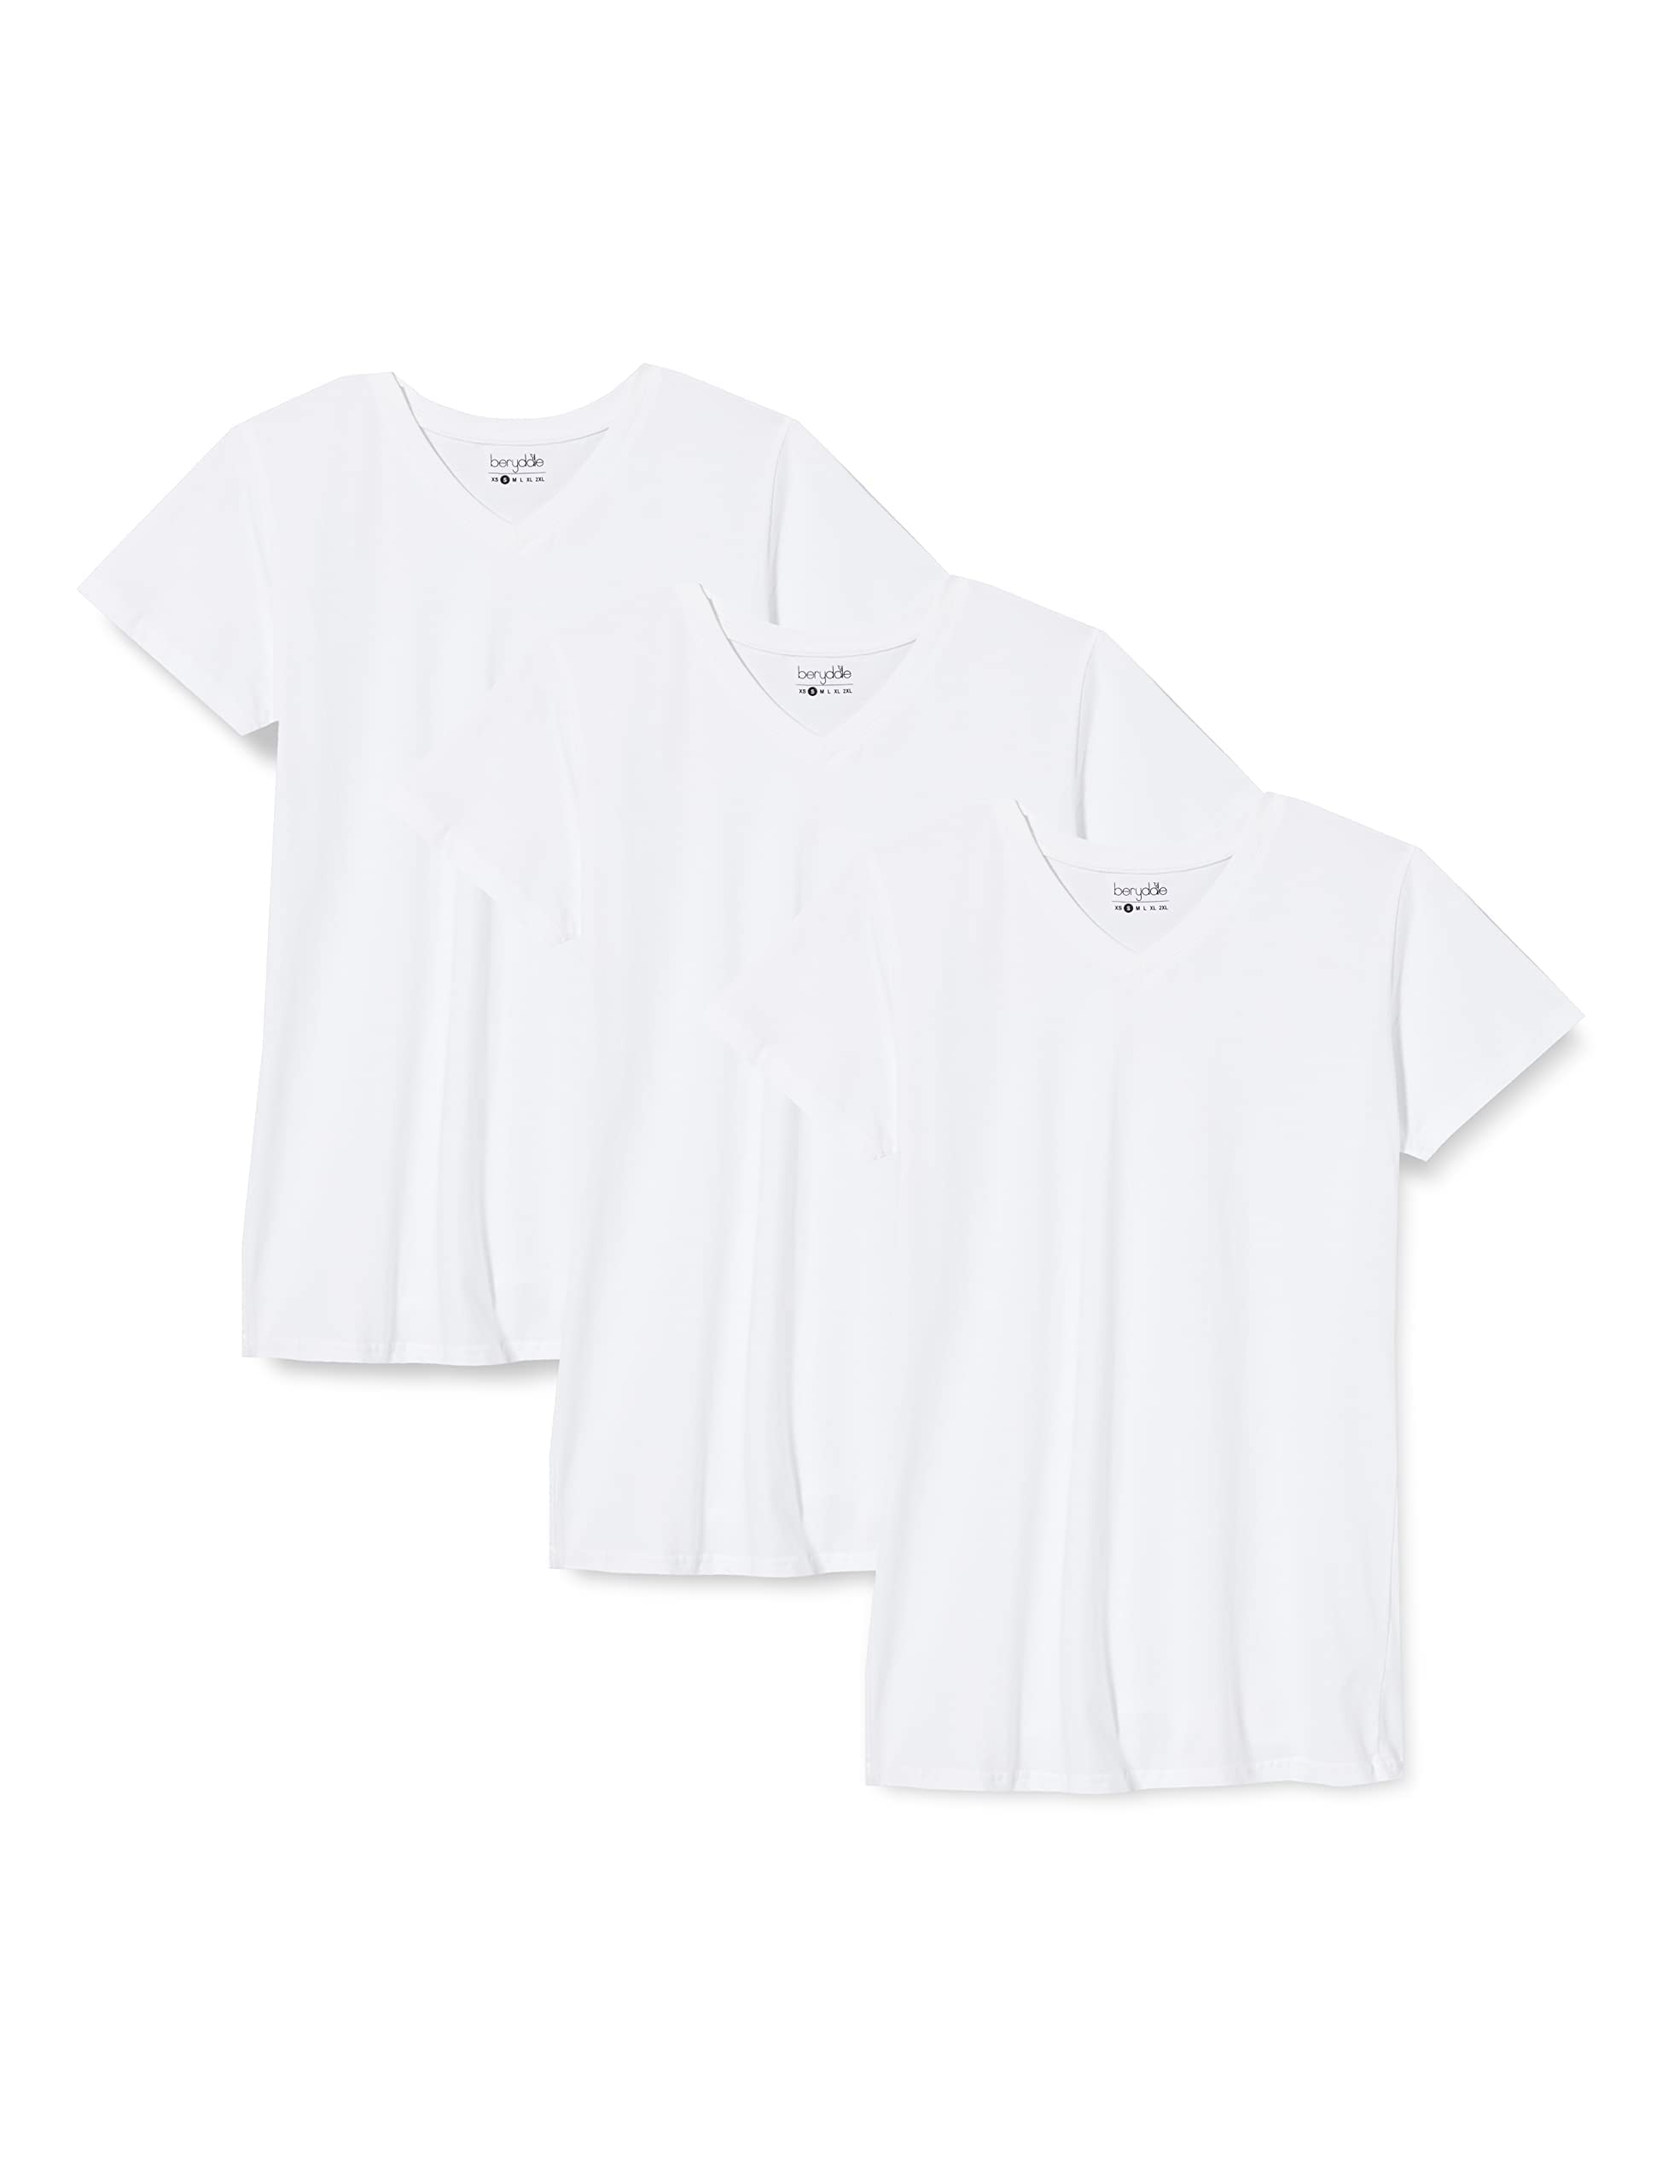 berydale Damen T-Shirt Bd158, Weiß - 3er Pack, S